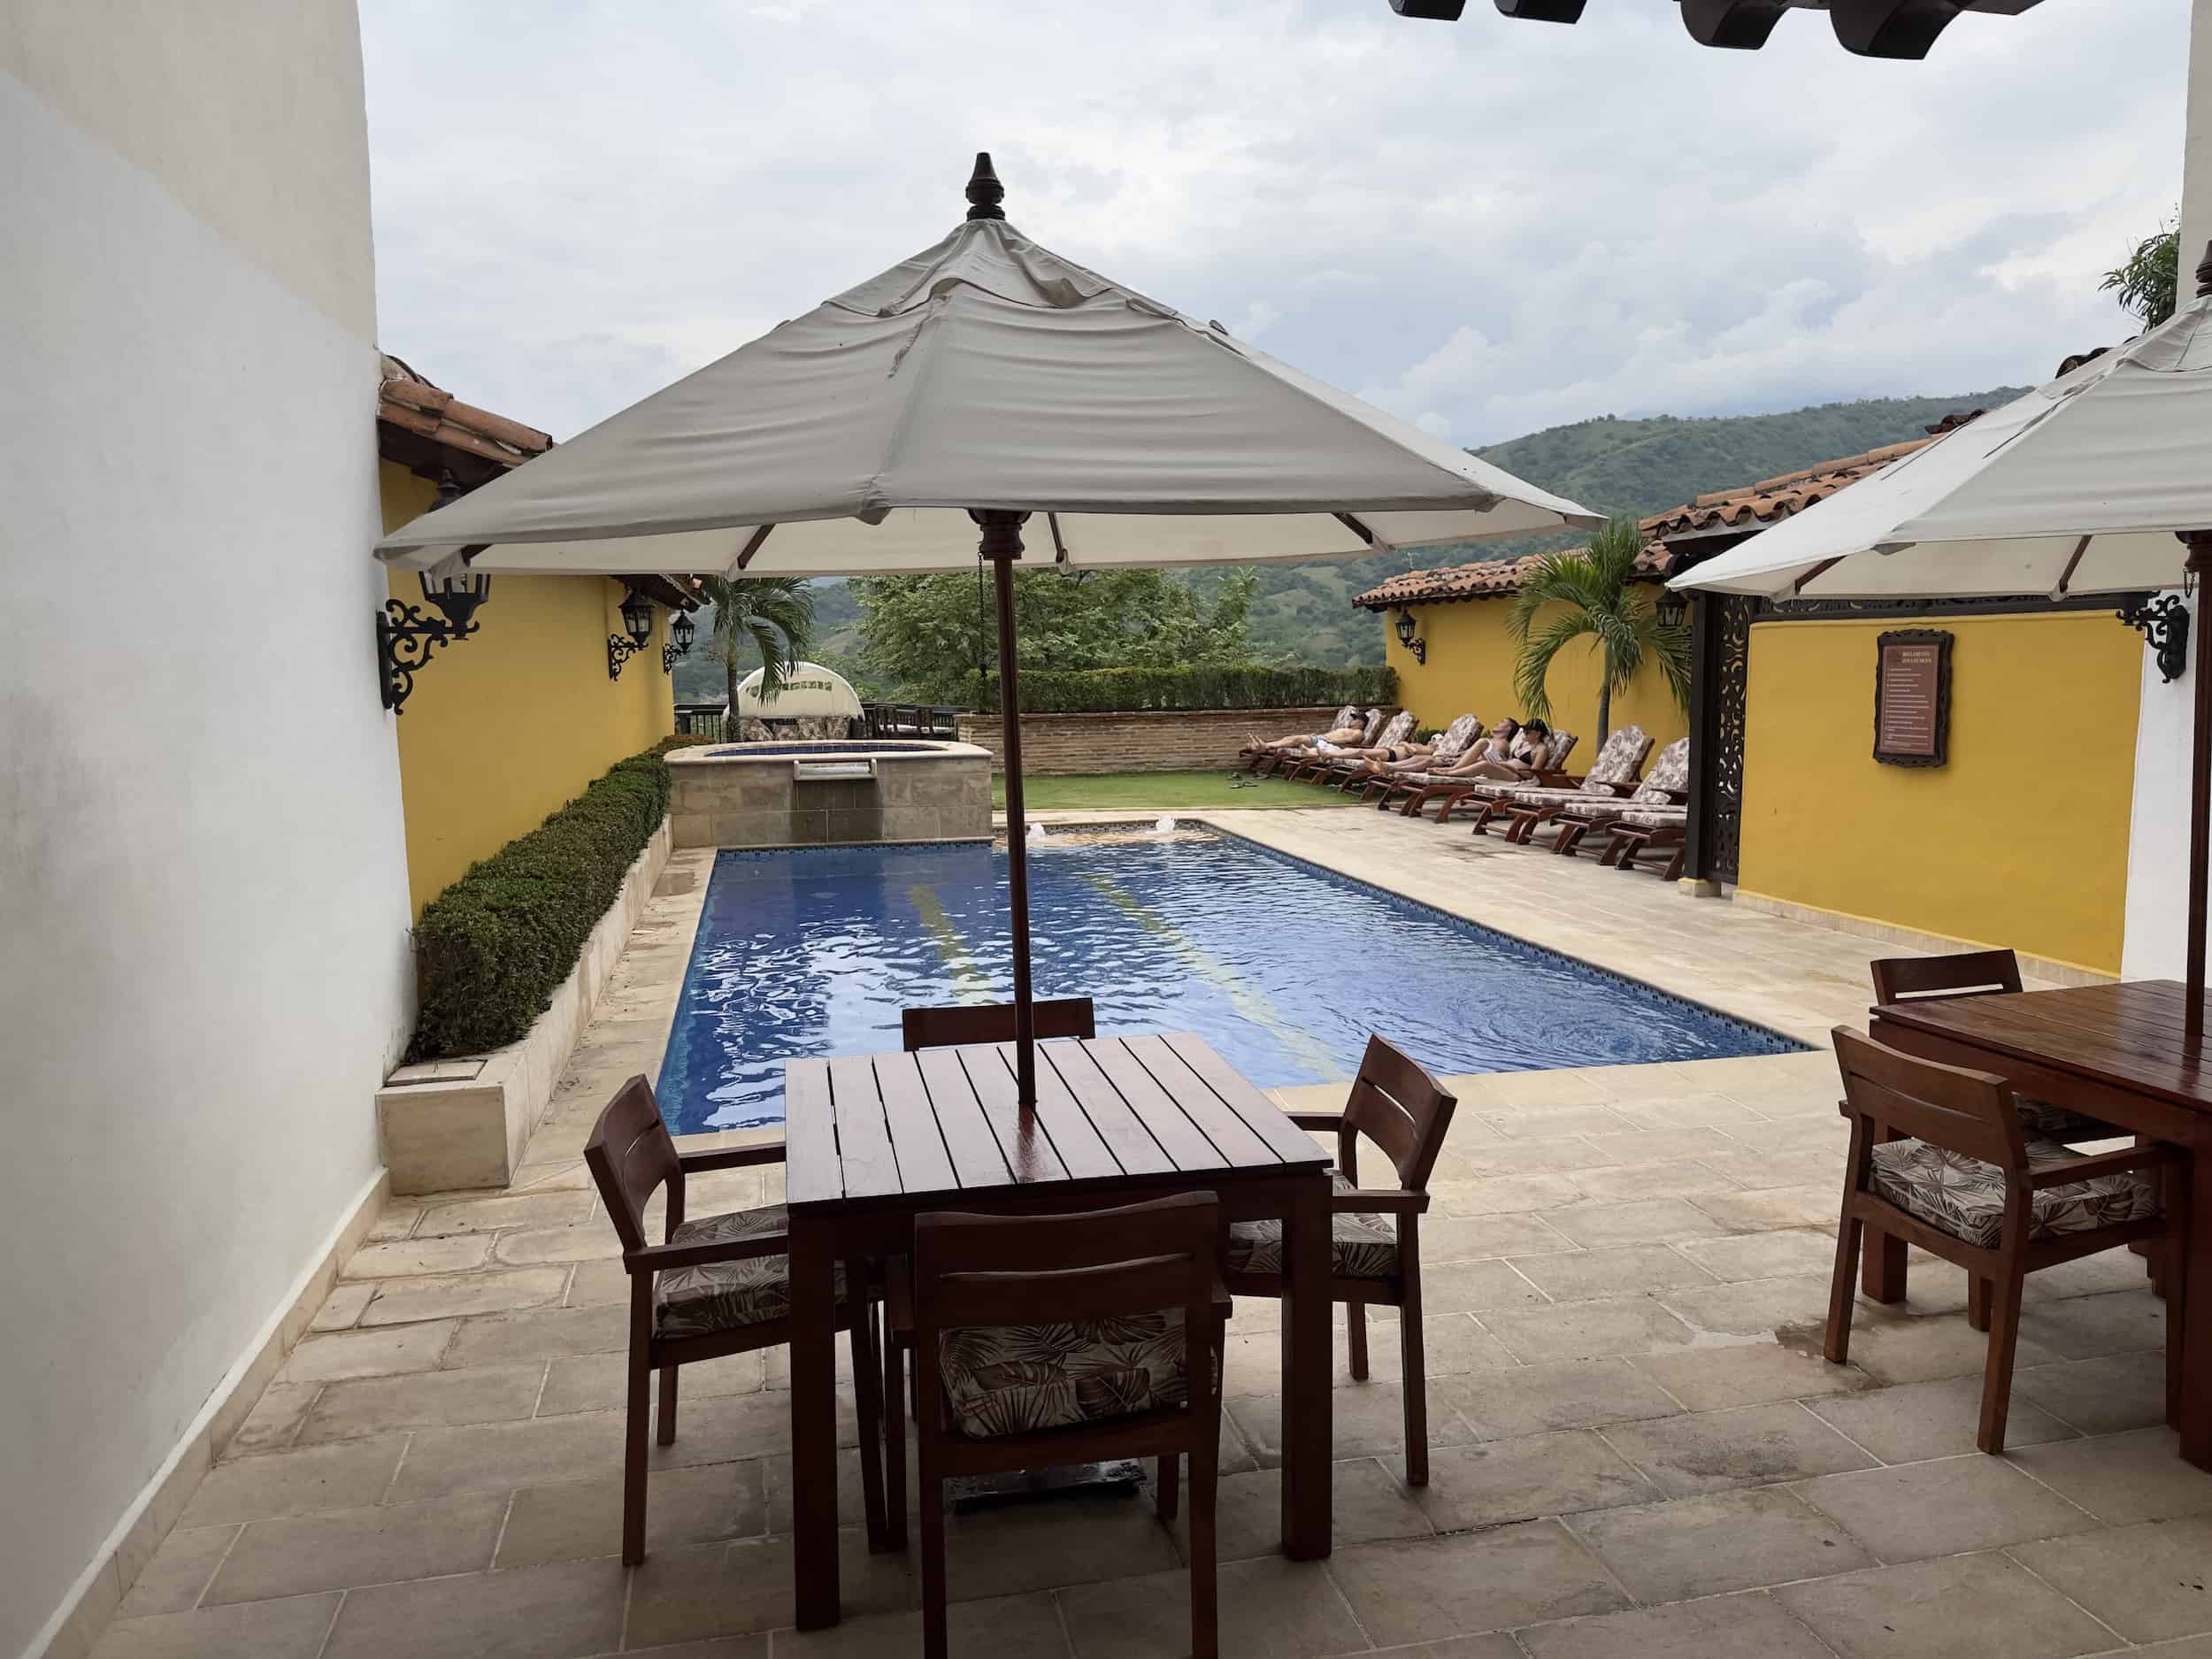 Pool at Hotel Colonial Nueva Granada in Santa Fe de Antioquia, Colombia